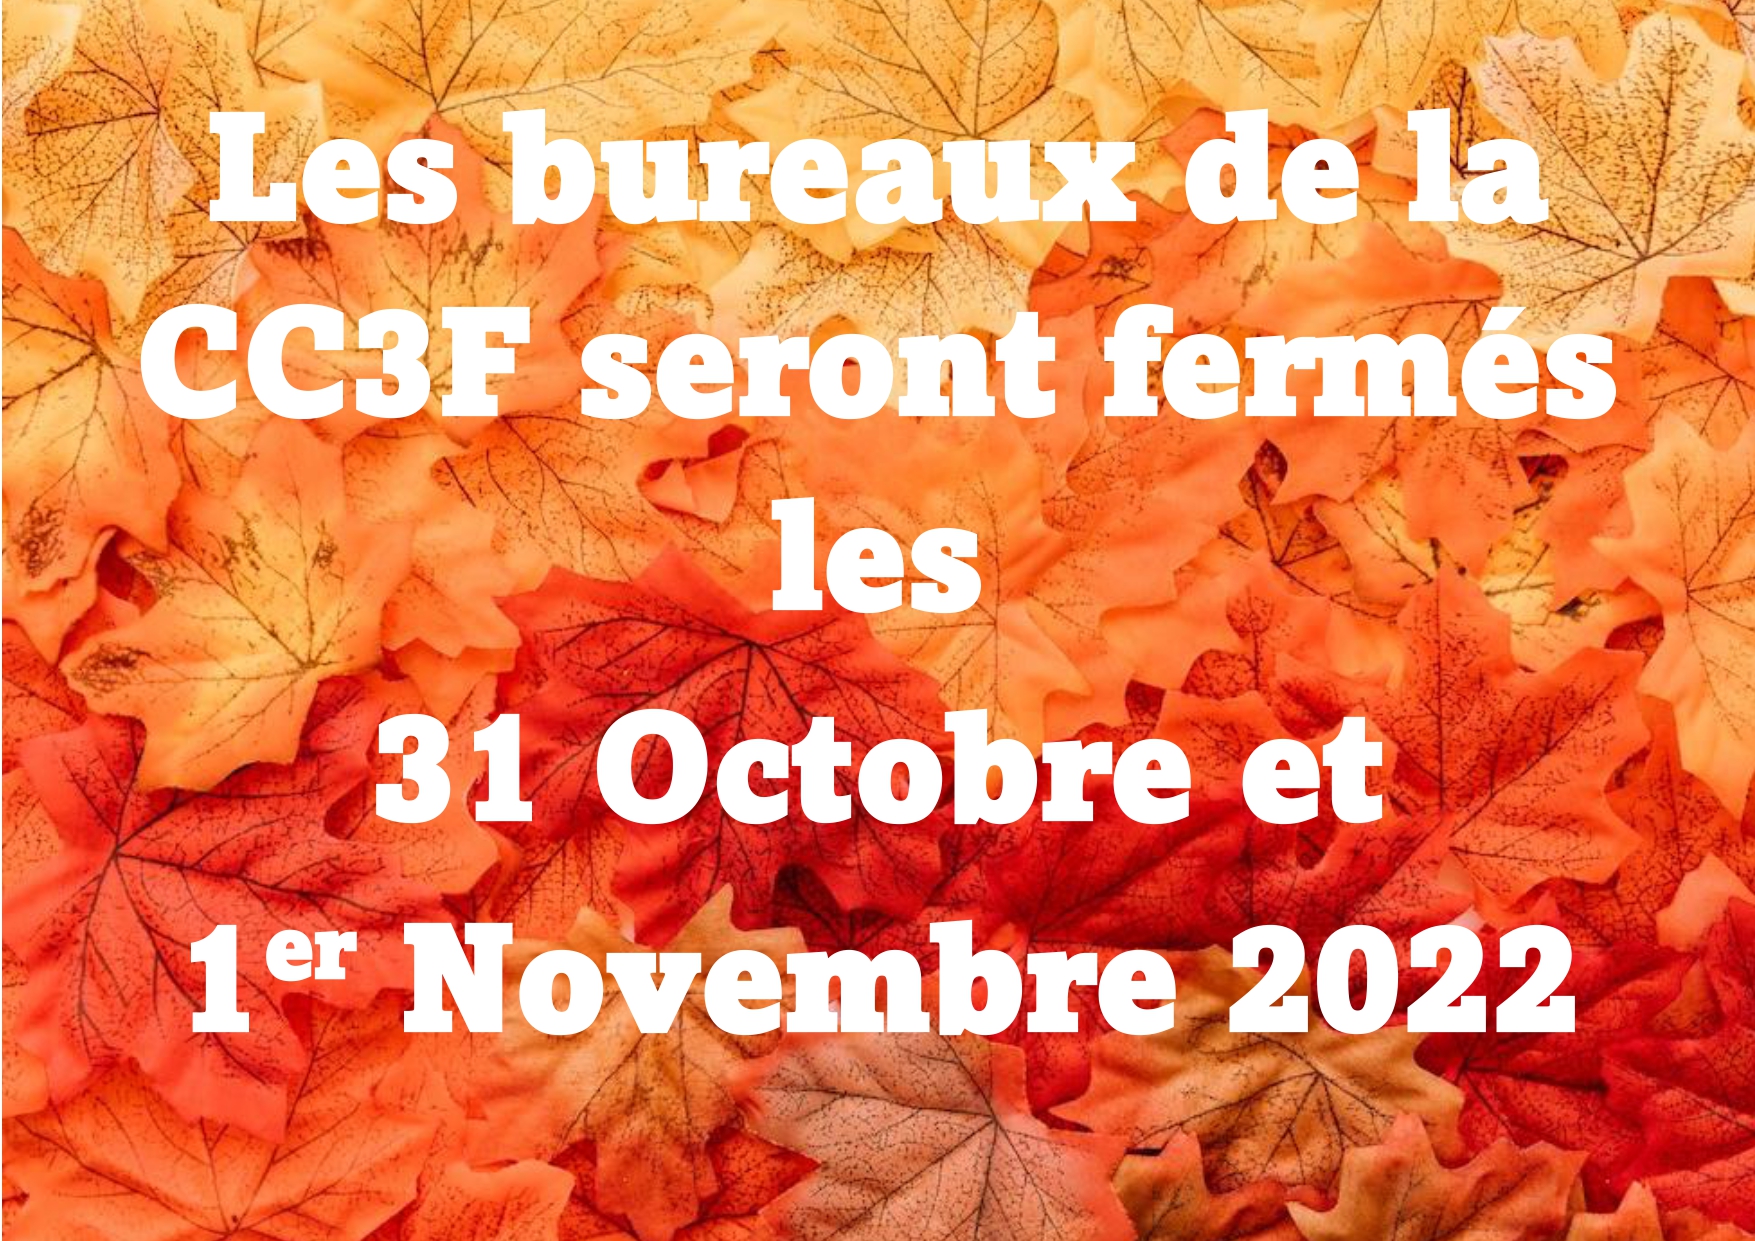 Fermeture des bureaux de la CC3F les 31 octobre et 1er novembre 2022